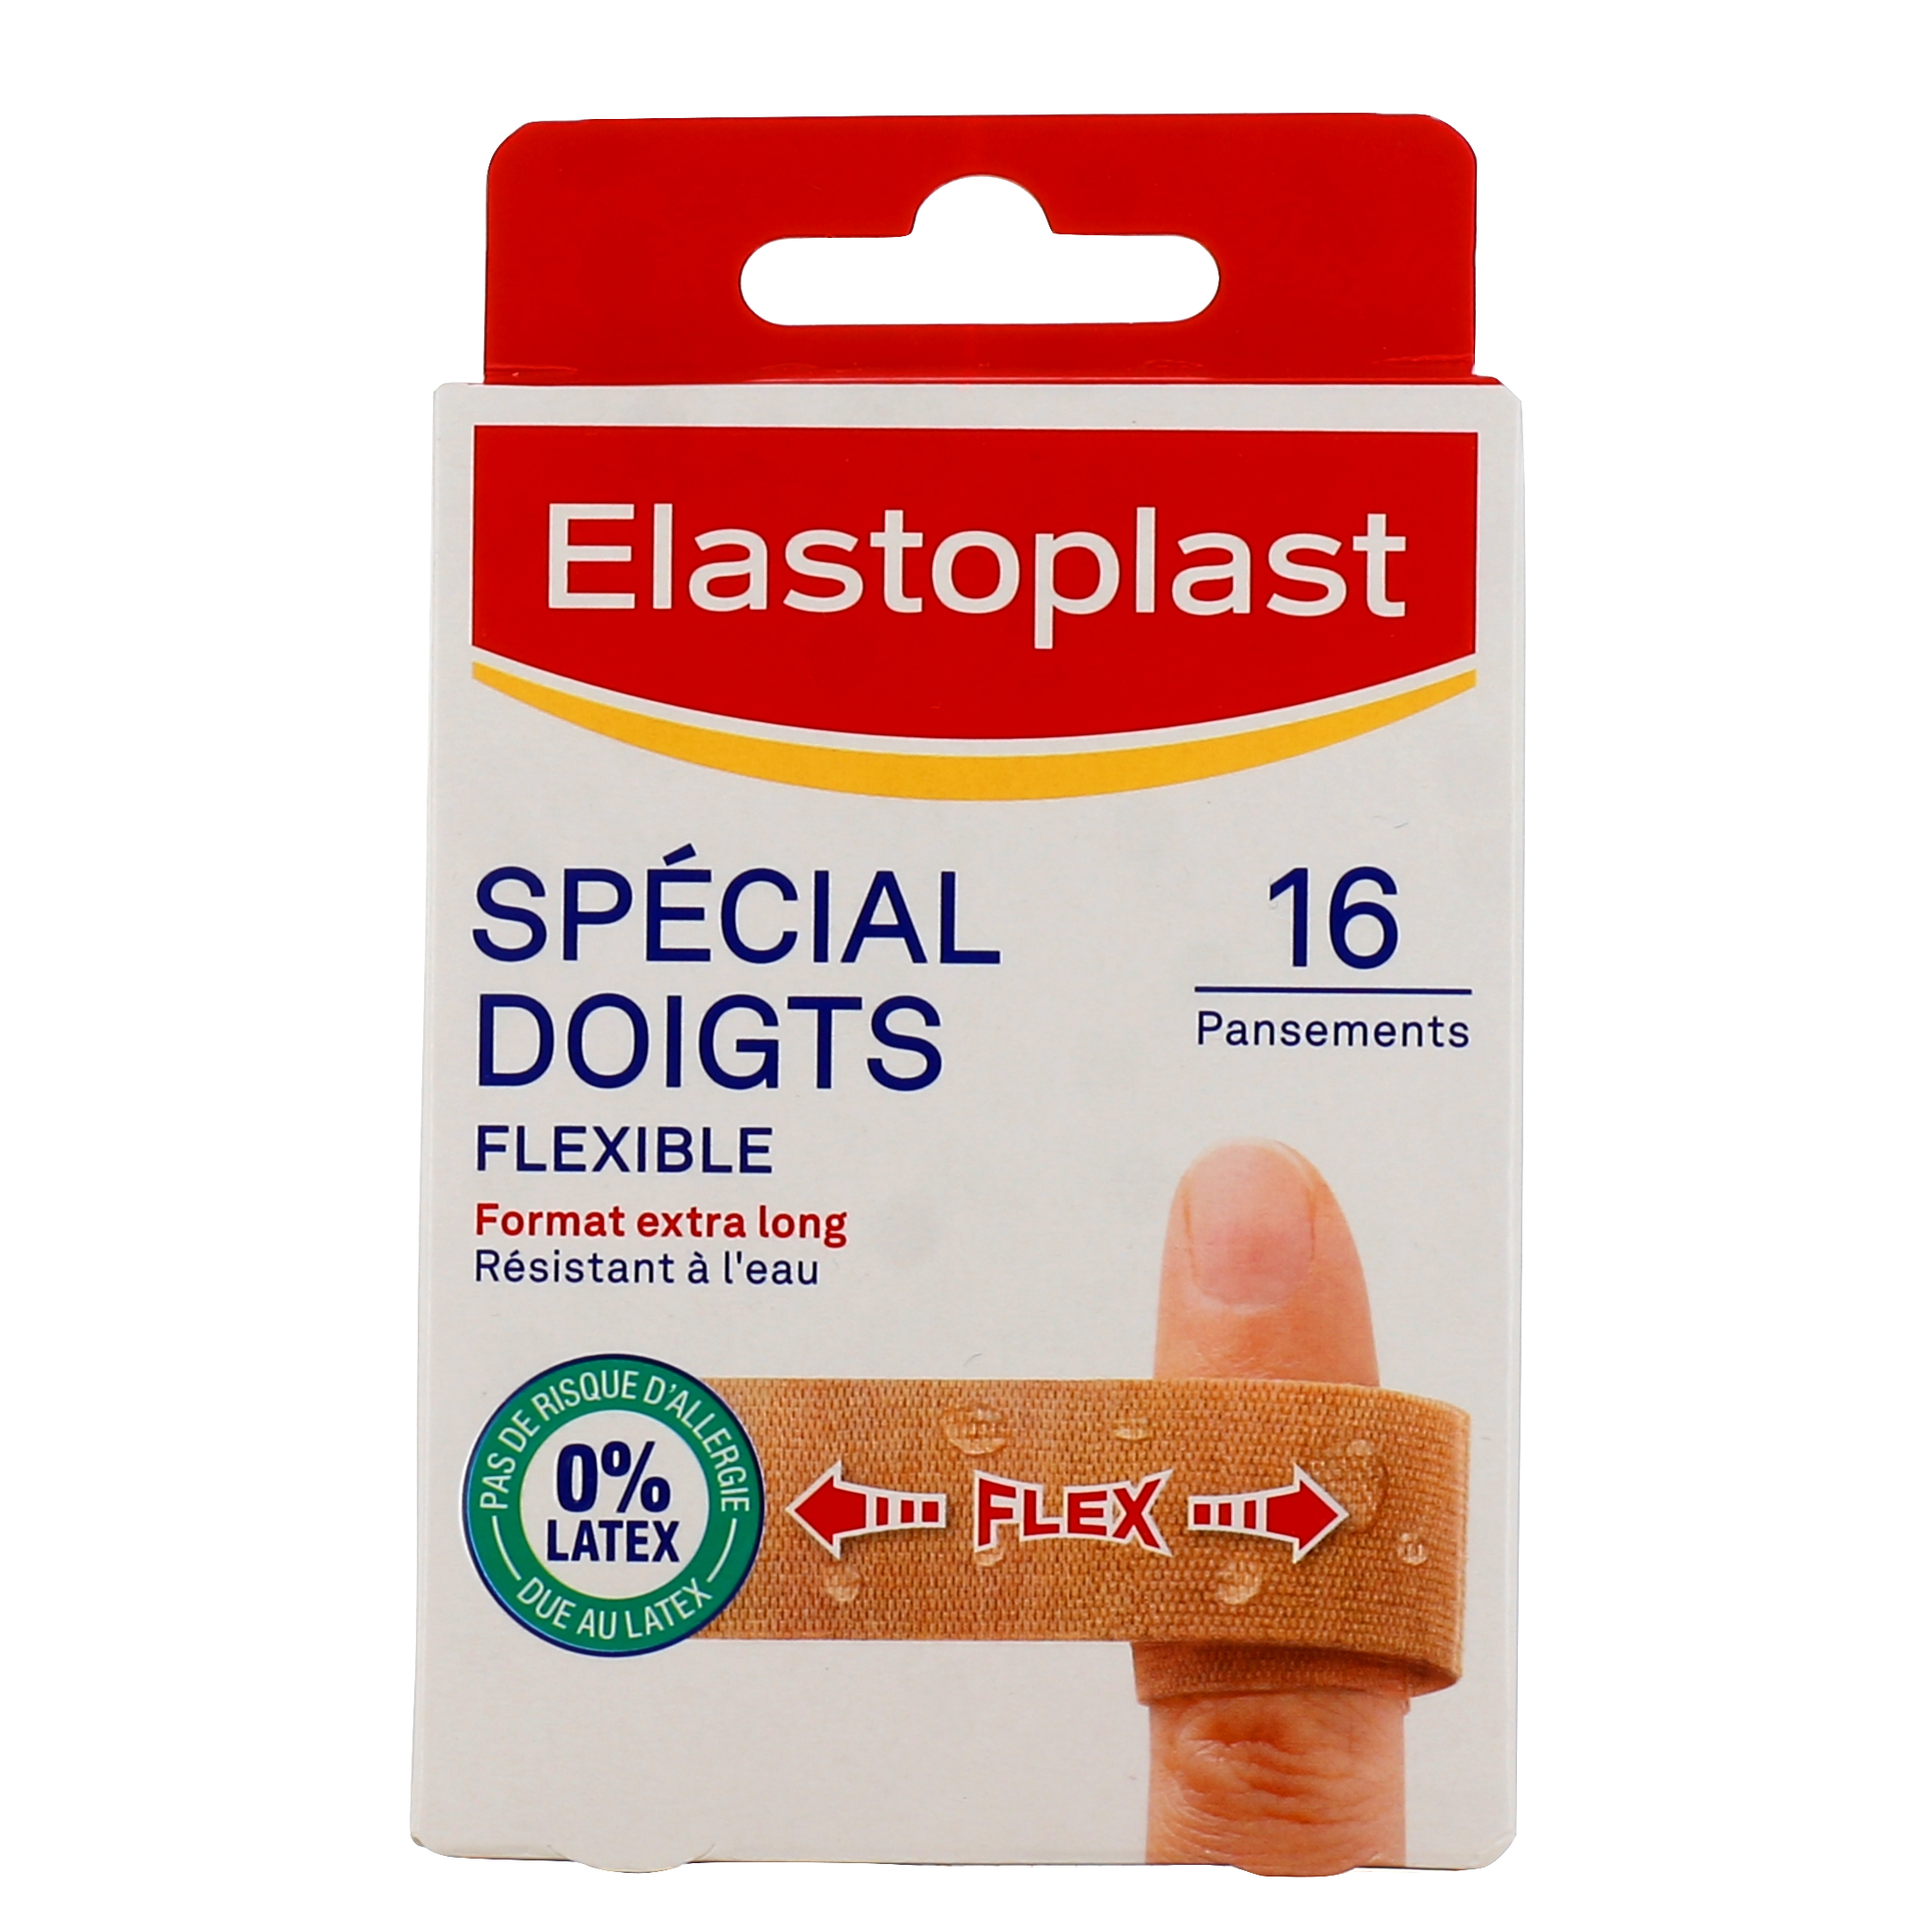 Elastoplast pansement spécial doigts - Traitement des plaies